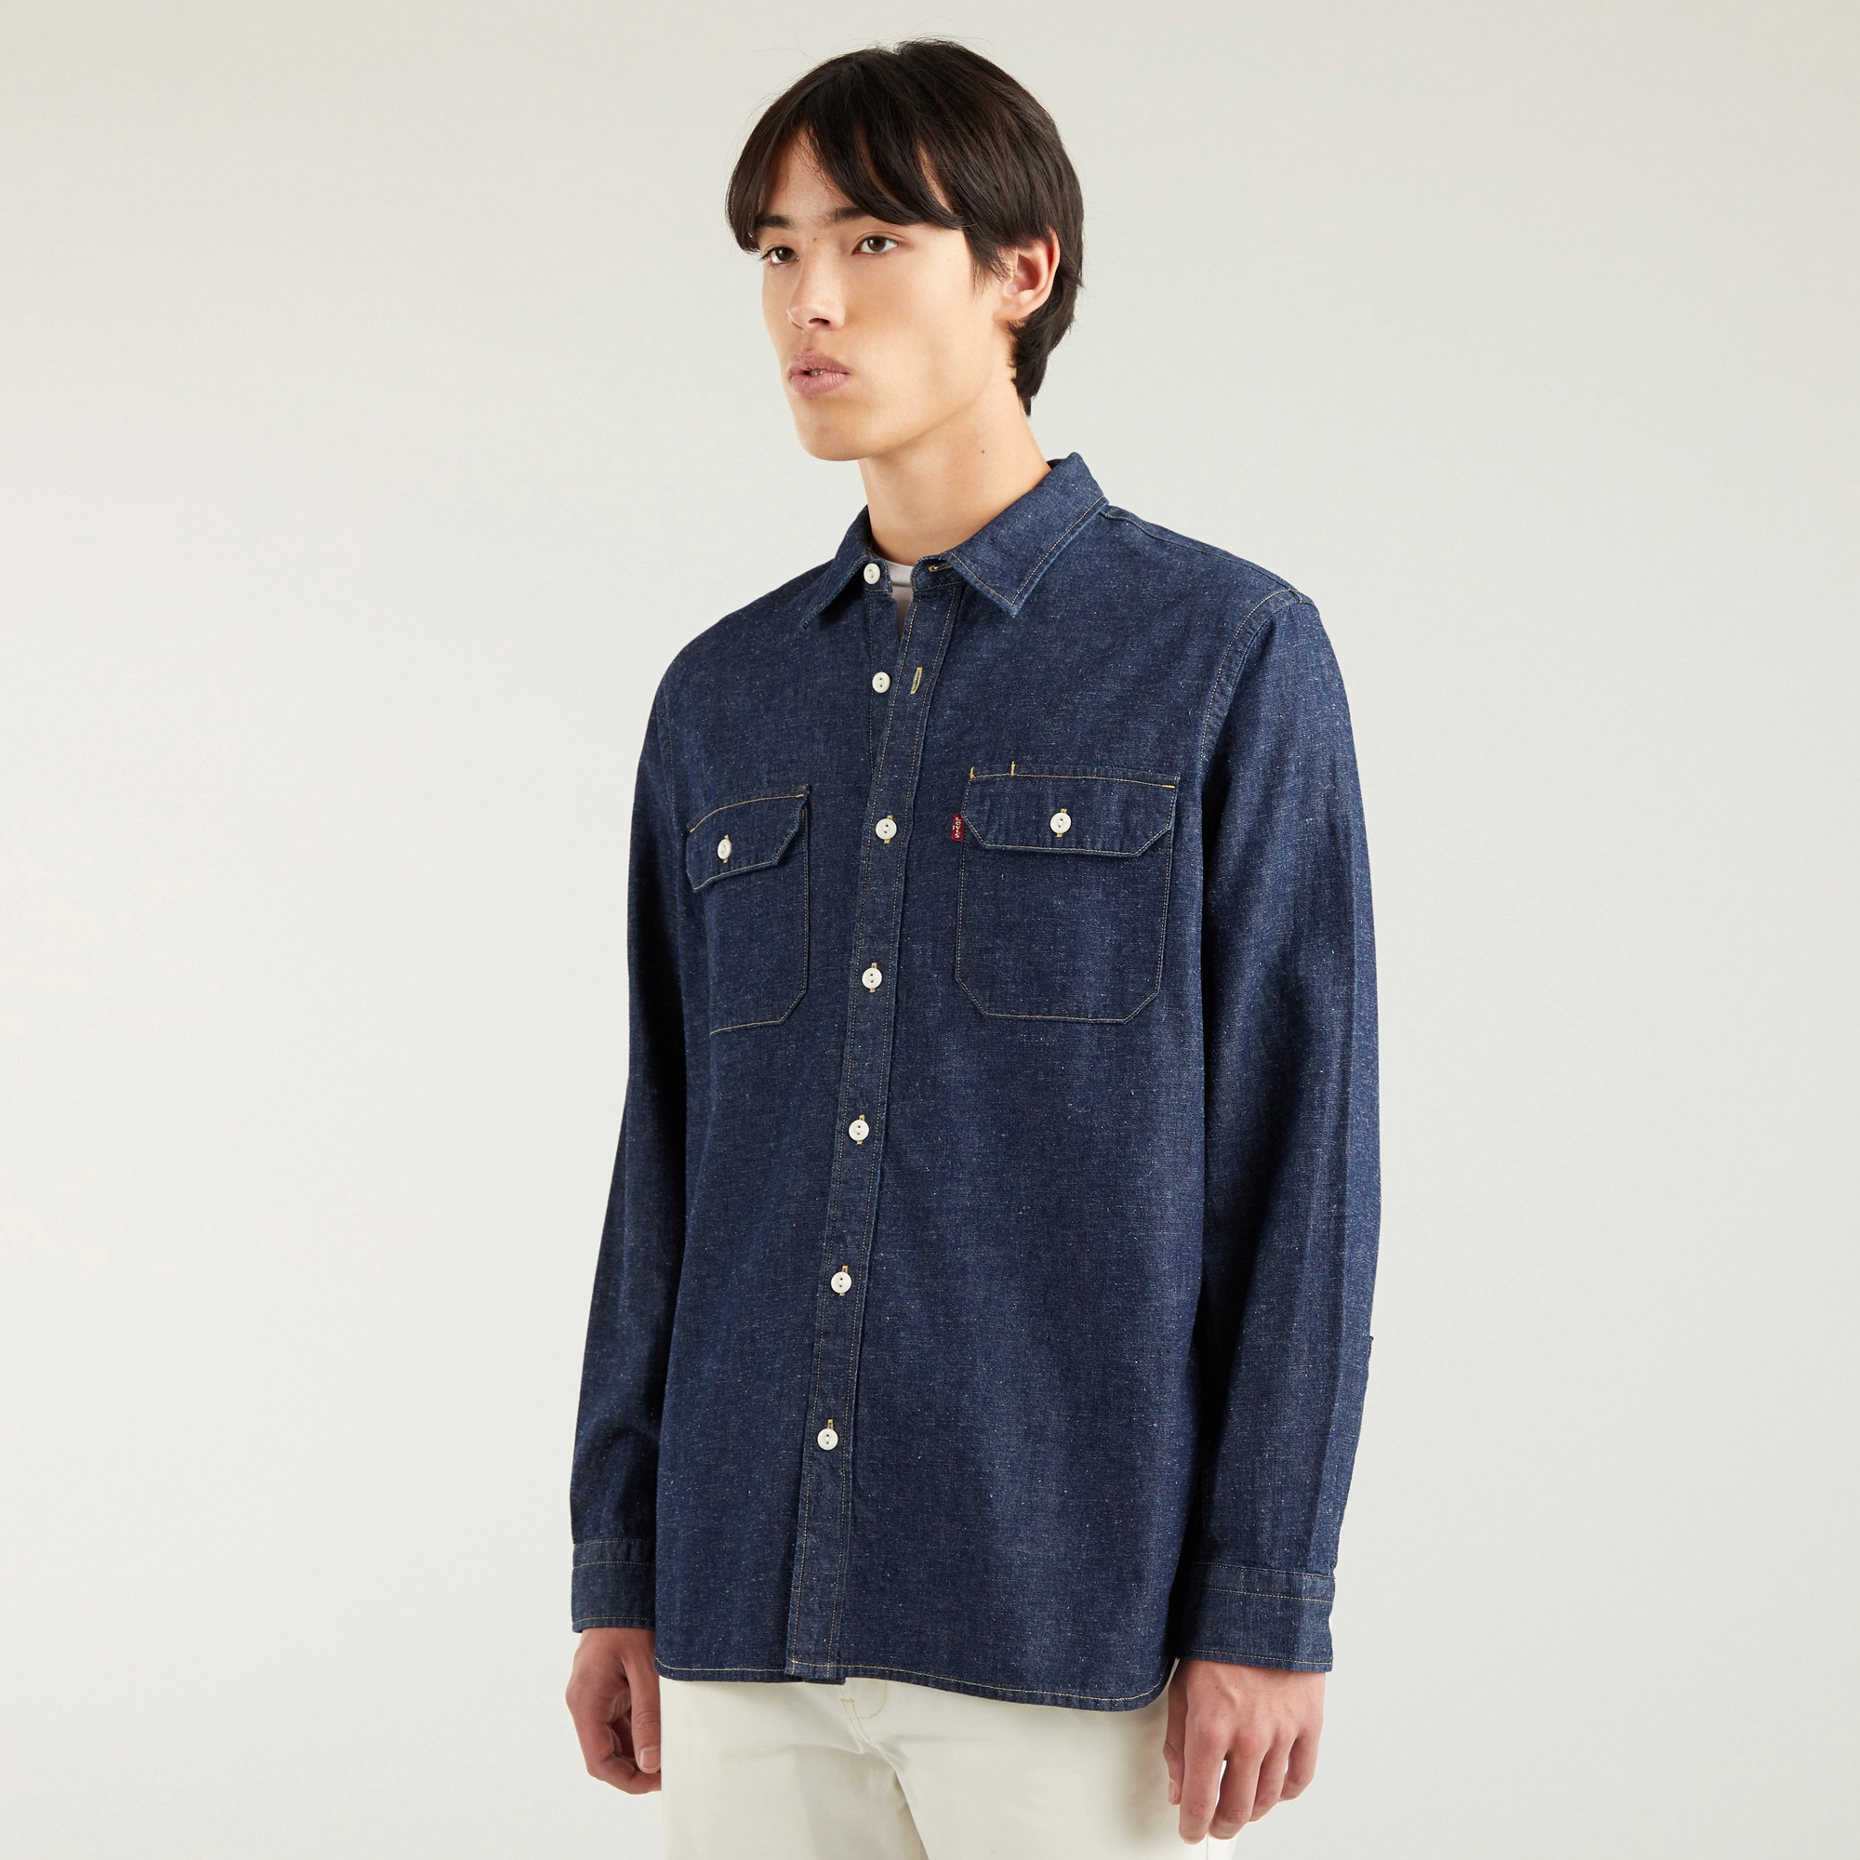 Джинсовая рубашка мужская Levi's 19573-0135 синяя XL